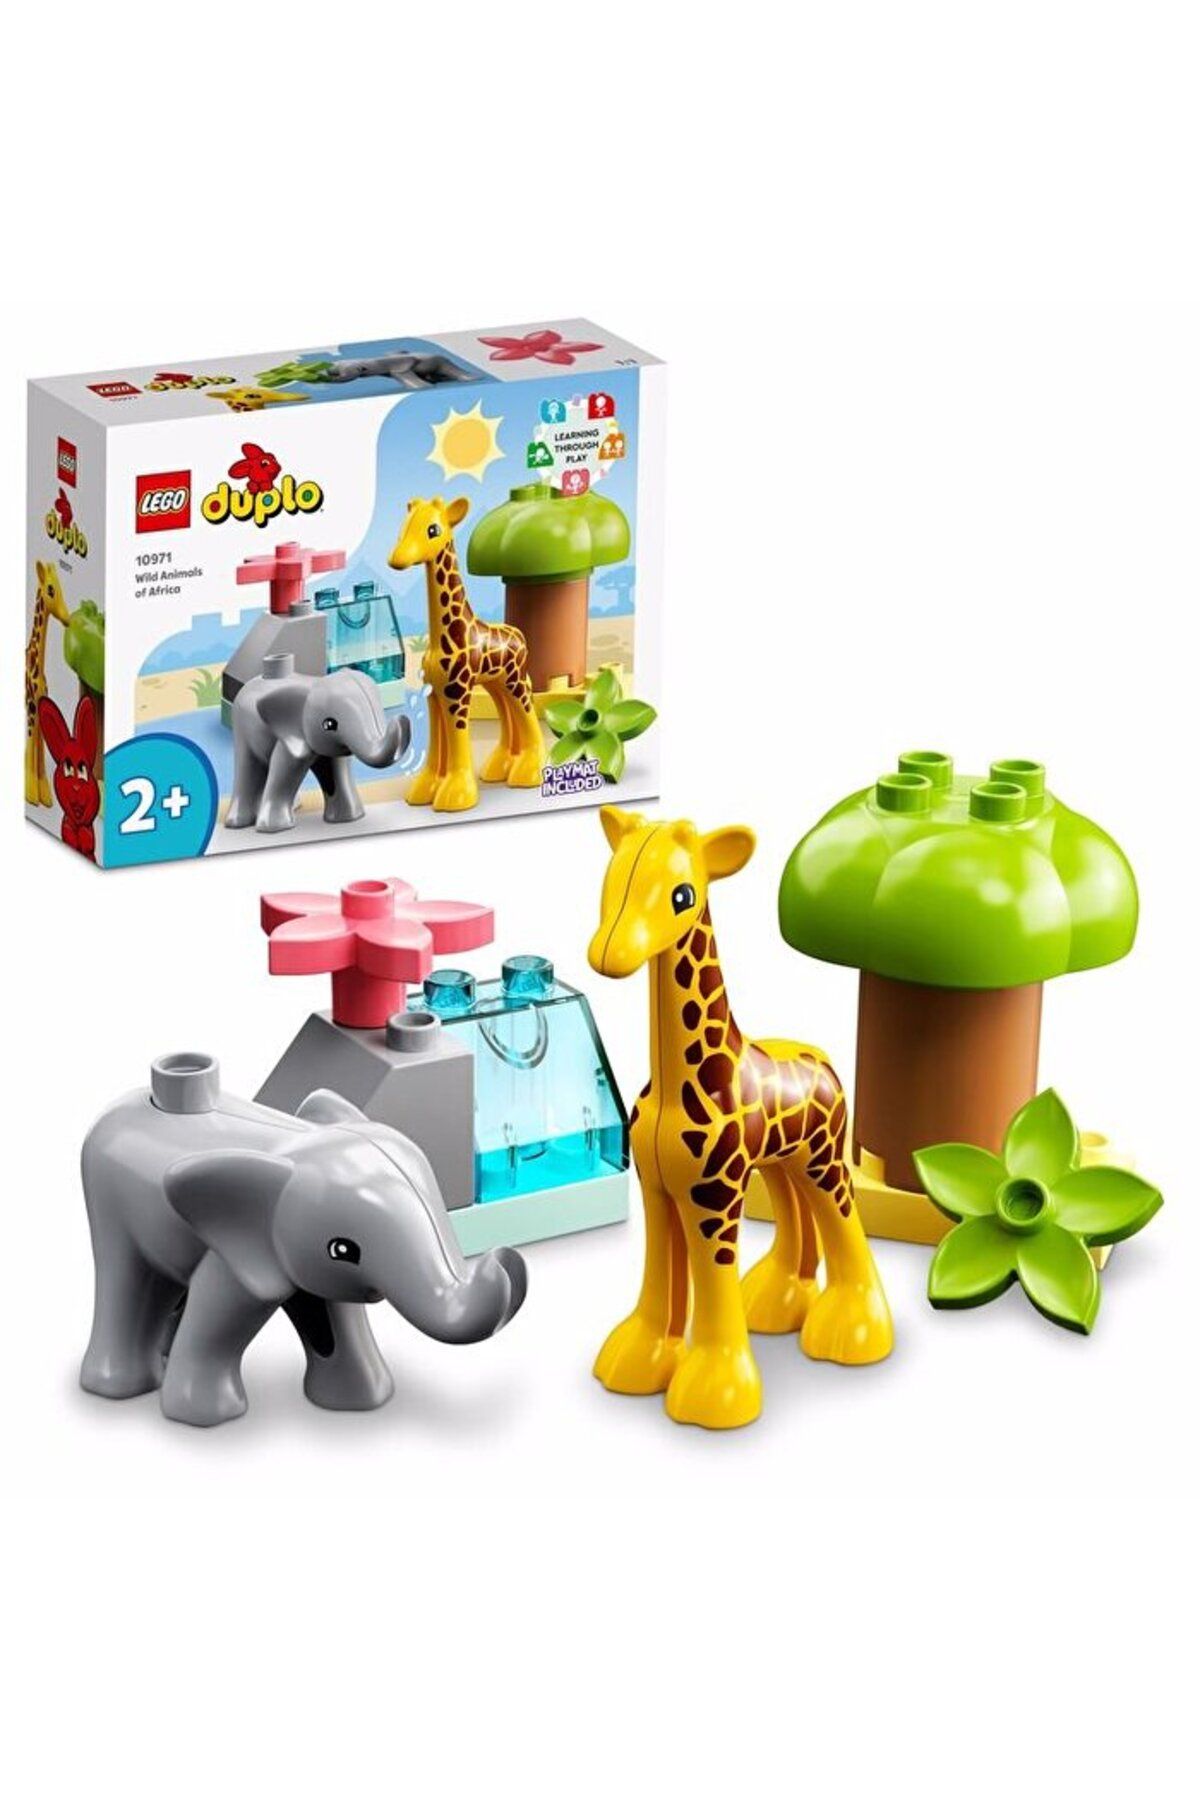 LEGO ® DUPLO® Vahşi Afrika Hayvanları 10971 - 2 Yaş ve Üzeri Çocuklar için Yapım Seti (10 Parça)